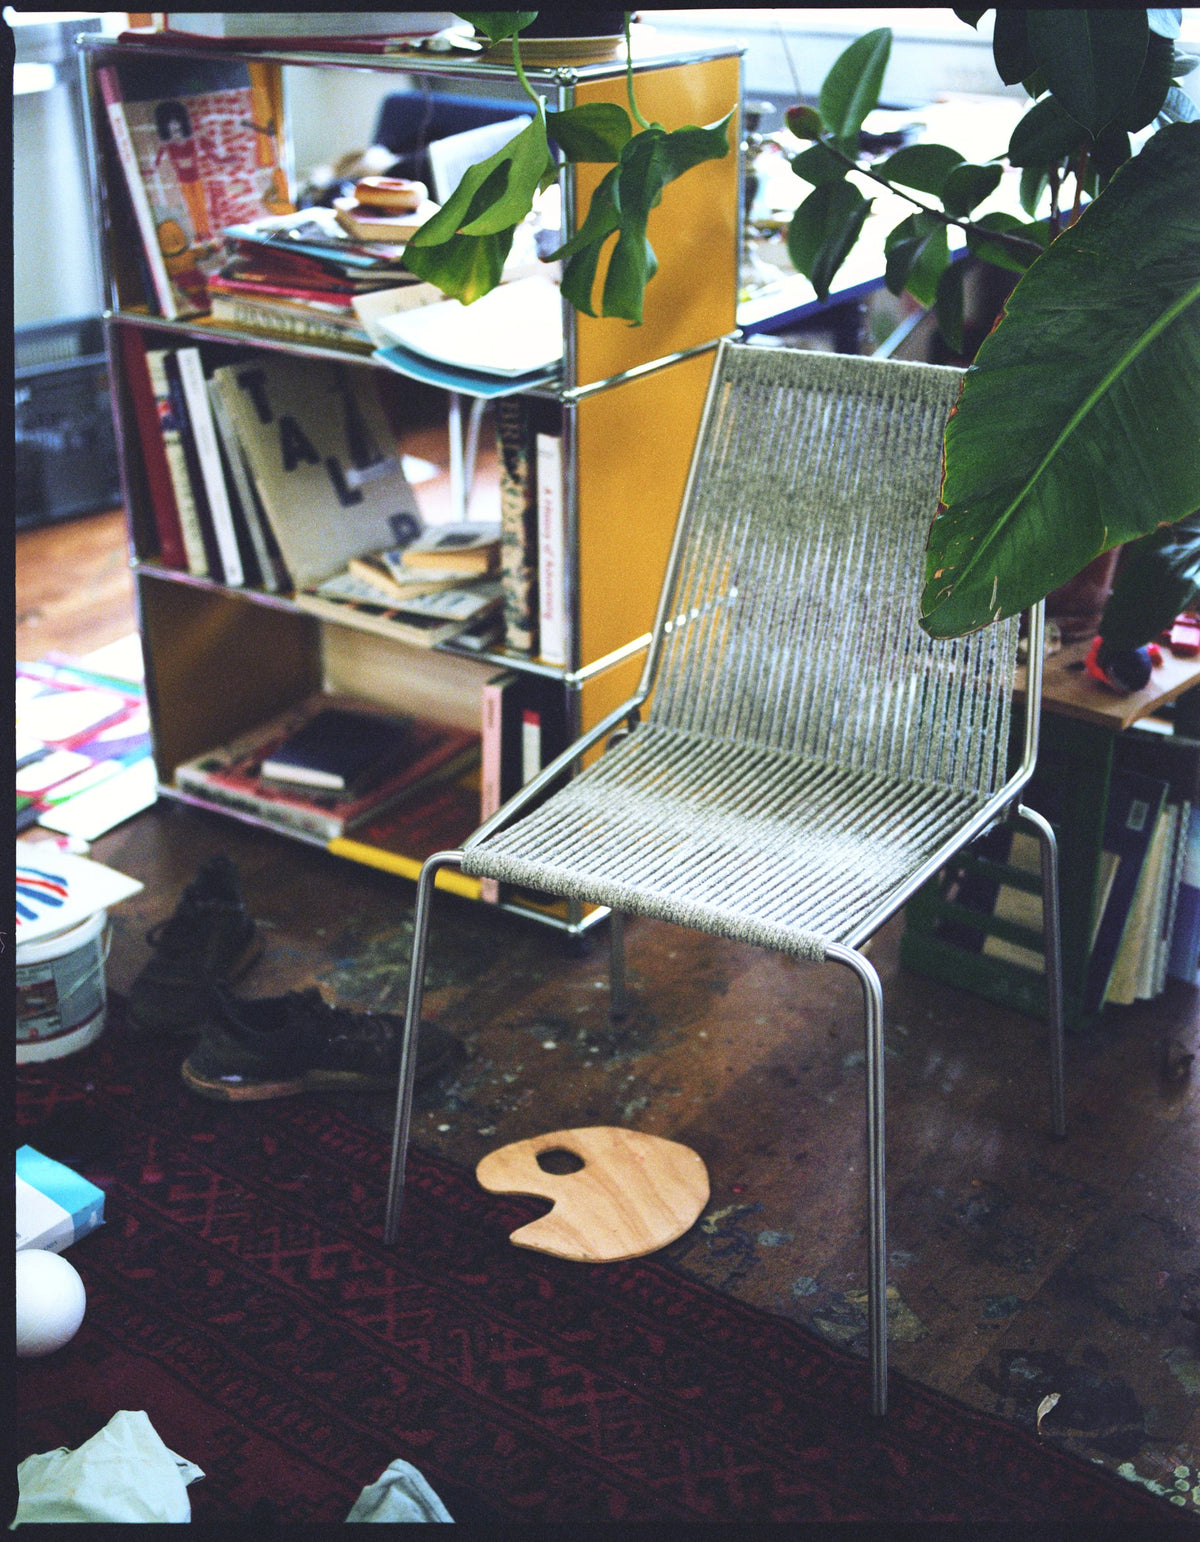 Noel Chair by Thorup Copenhagen